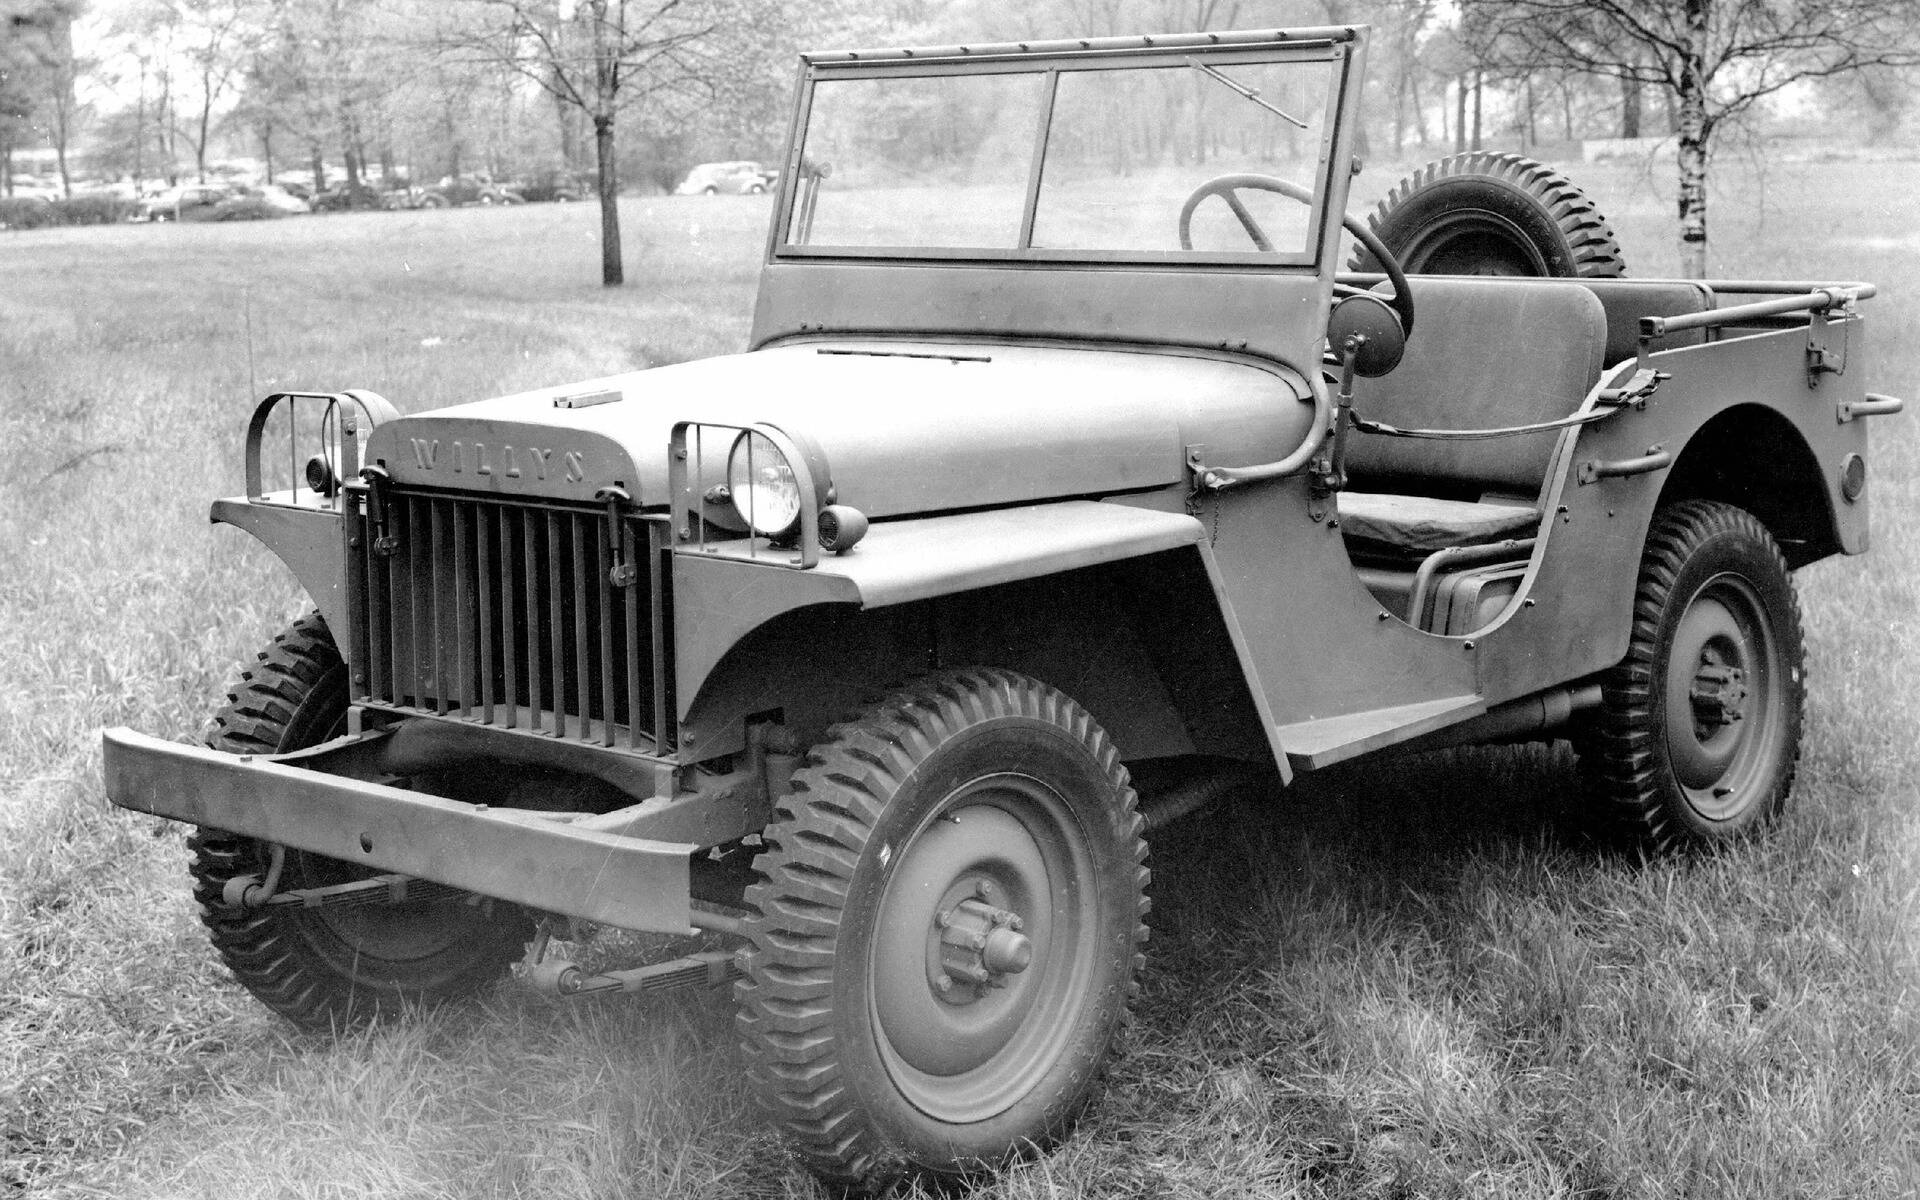 Le Jeep Wrangler d’hier à aujourd’hui 498196-le-jeep-wrangler-d-hier-a-aujourd-hui